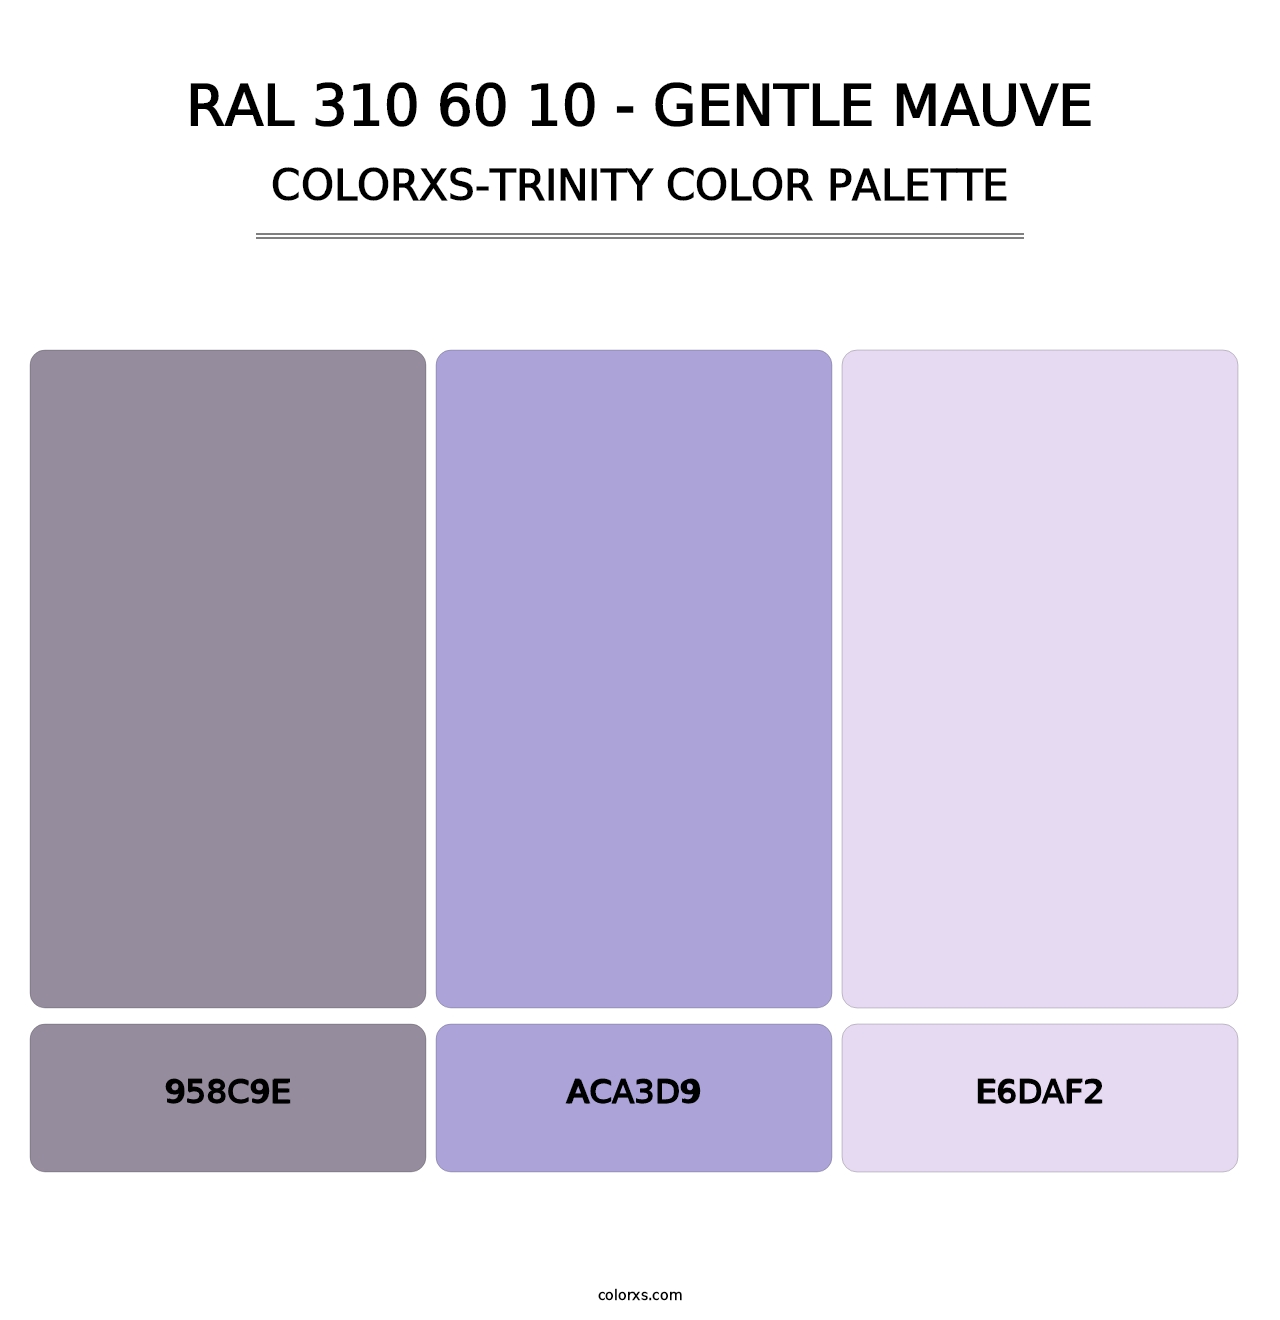 RAL 310 60 10 - Gentle Mauve - Colorxs Trinity Palette